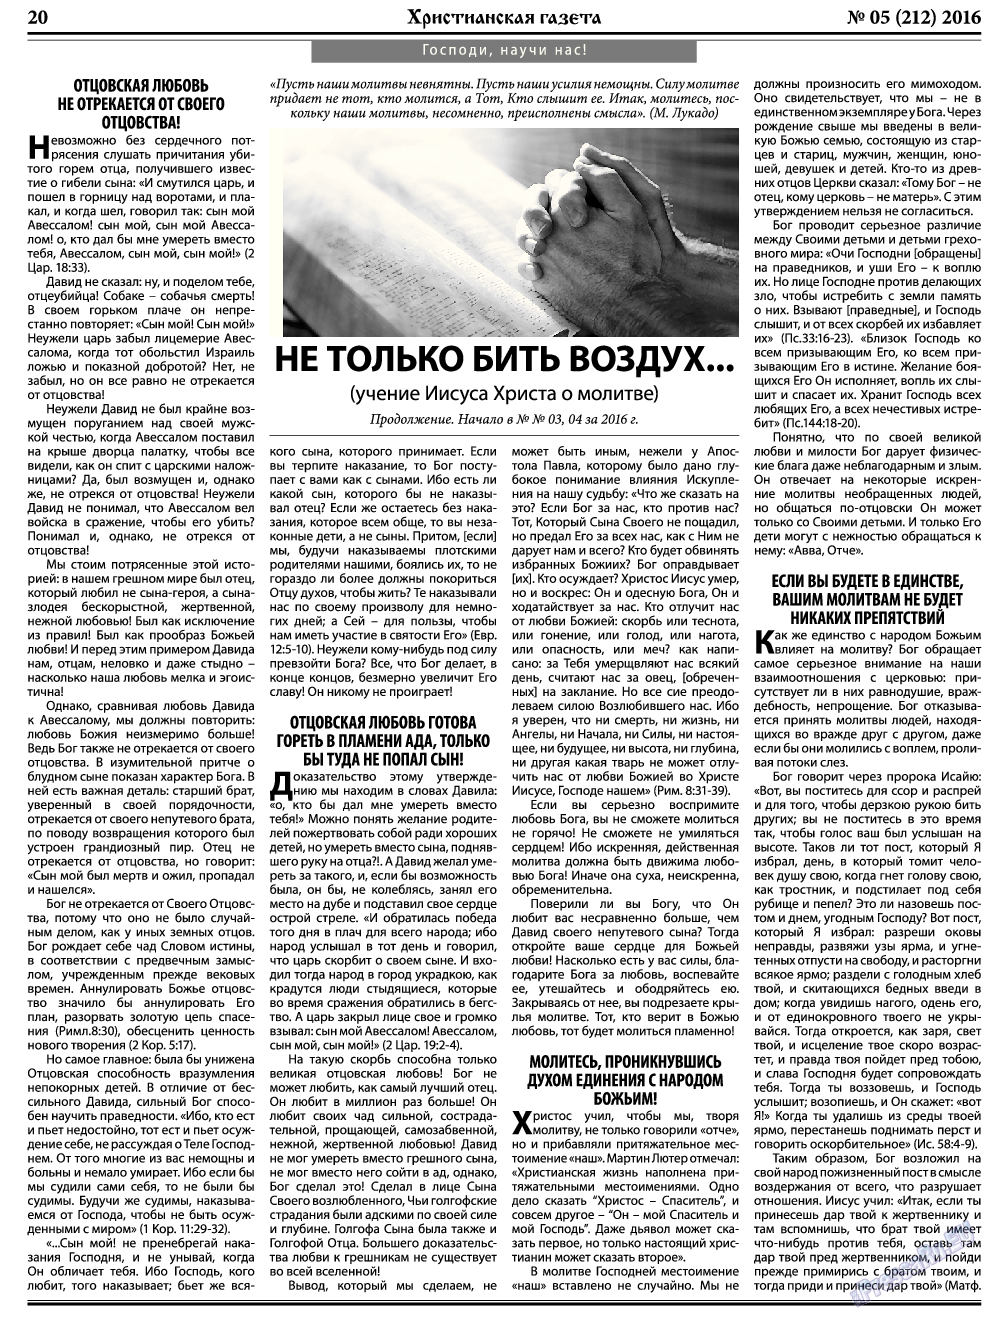 Христианская газета, газета. 2016 №5 стр.28